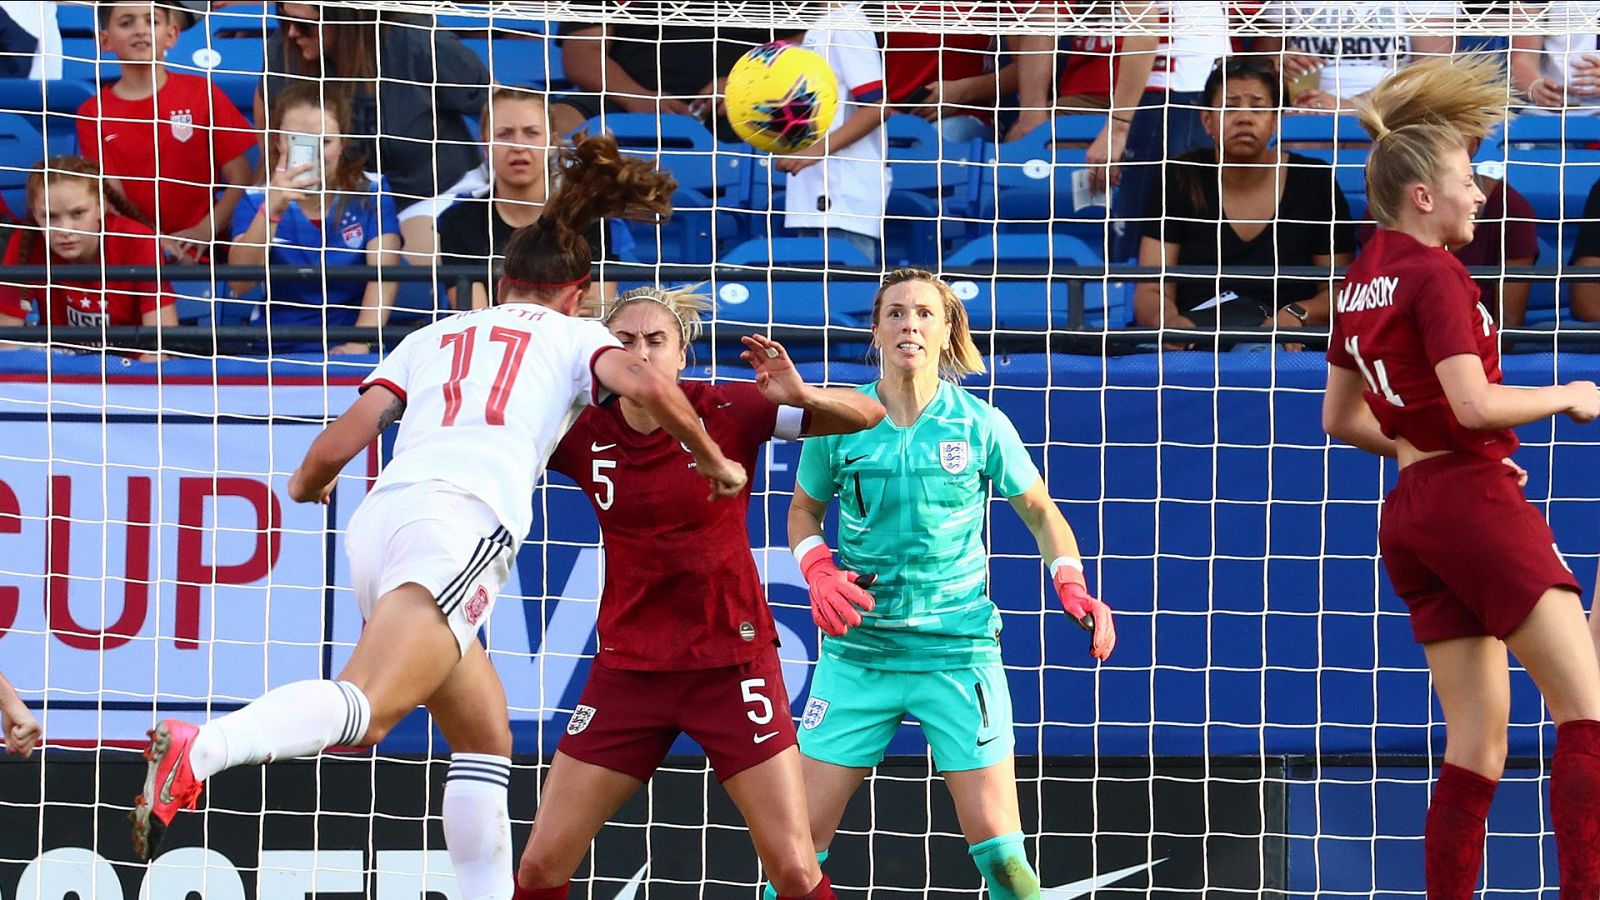 Fútbol - Torneo amistoso femenino "SheBelieves Cup 2020": Inglaterra - España. Desde Frisco (EE.UU.) - RTVE.es